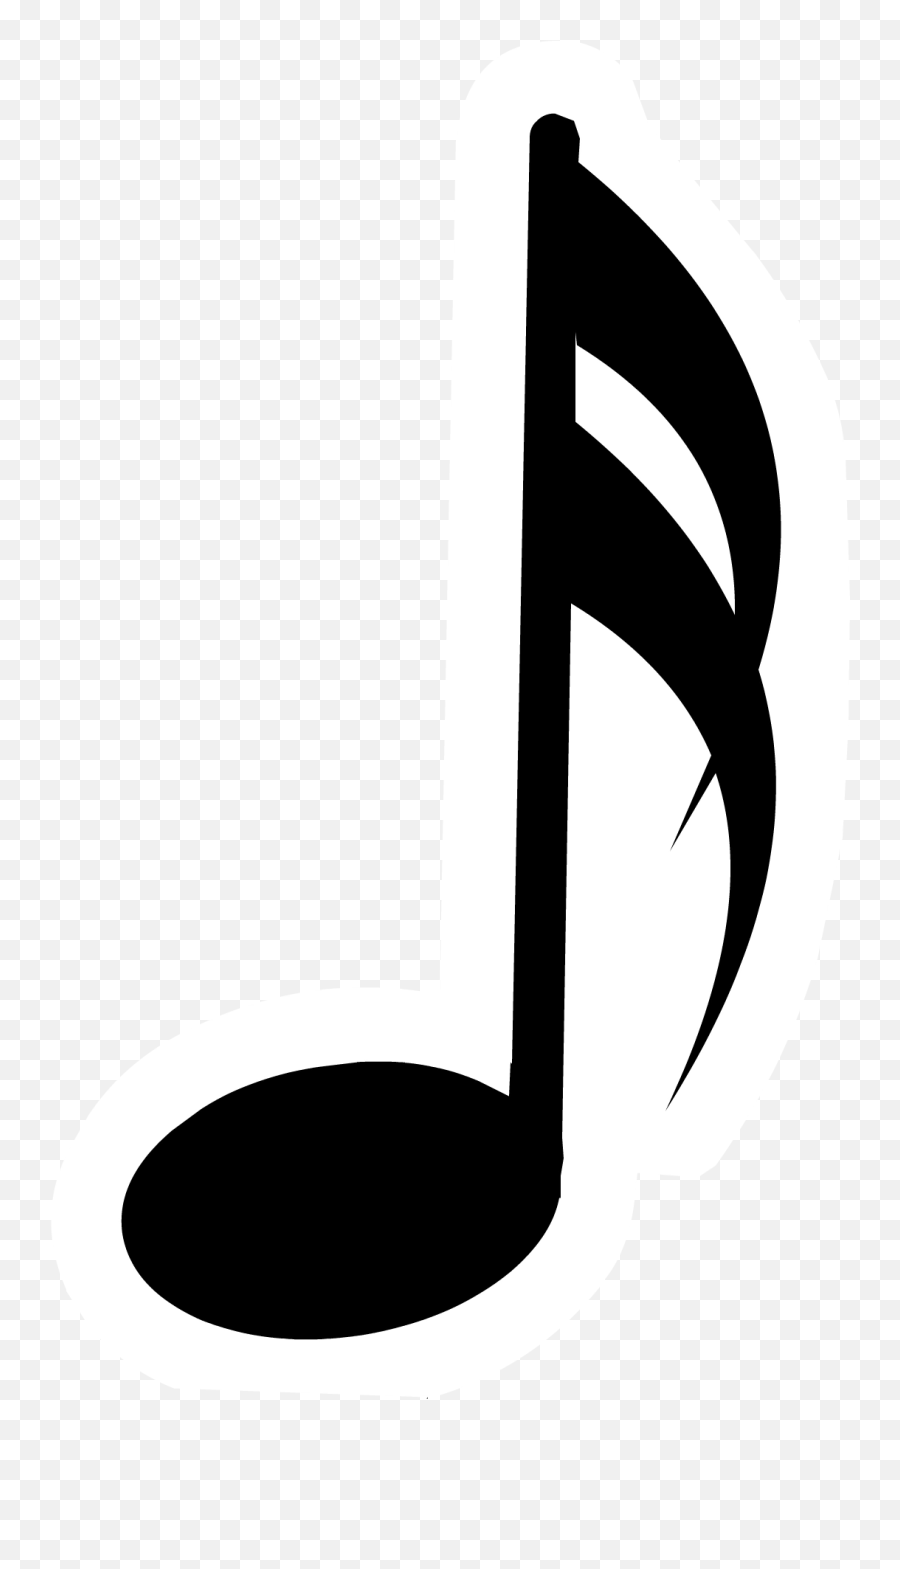 Music Note Pin - Single Music Notes Emoji,Musical Note Emojis